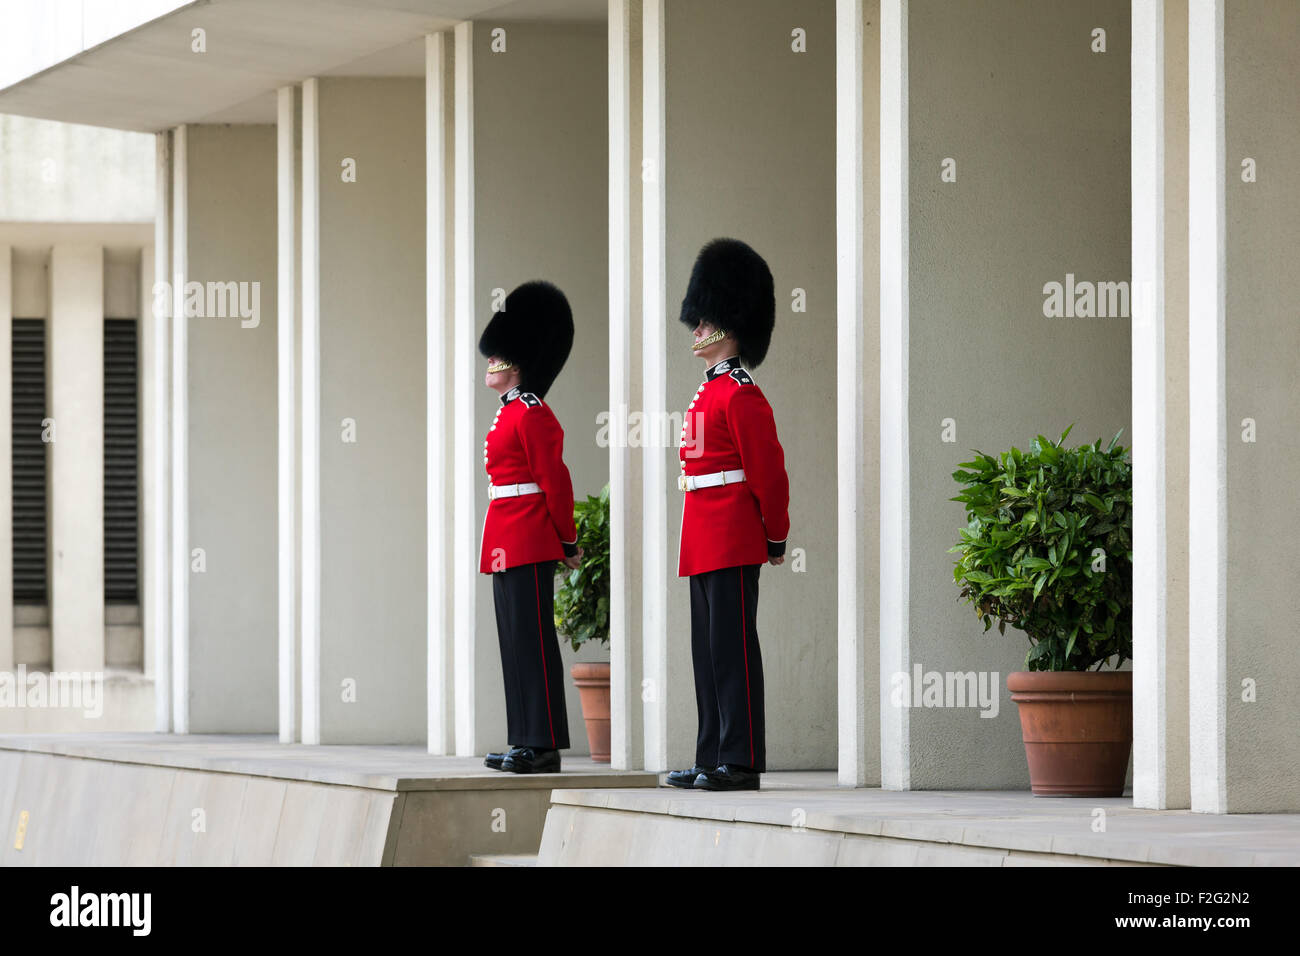 04.06.2012, London, größere London, United Kingdom - The Grenadier Guards (dt.: Grenadier Guards), auch bekannt als 1. Fuß Stockfoto